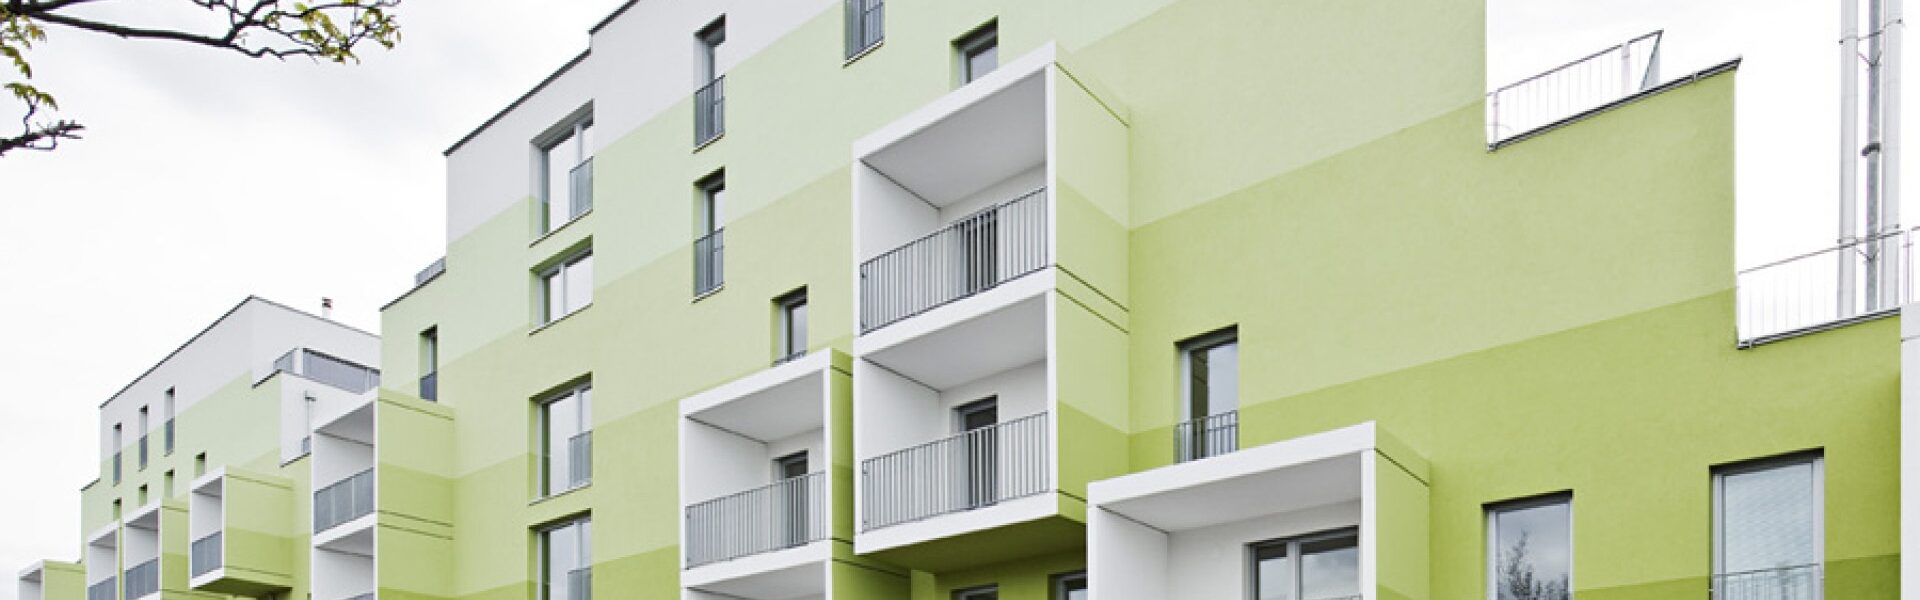 Виды сделок с недвижимостью - основные типы и особенности